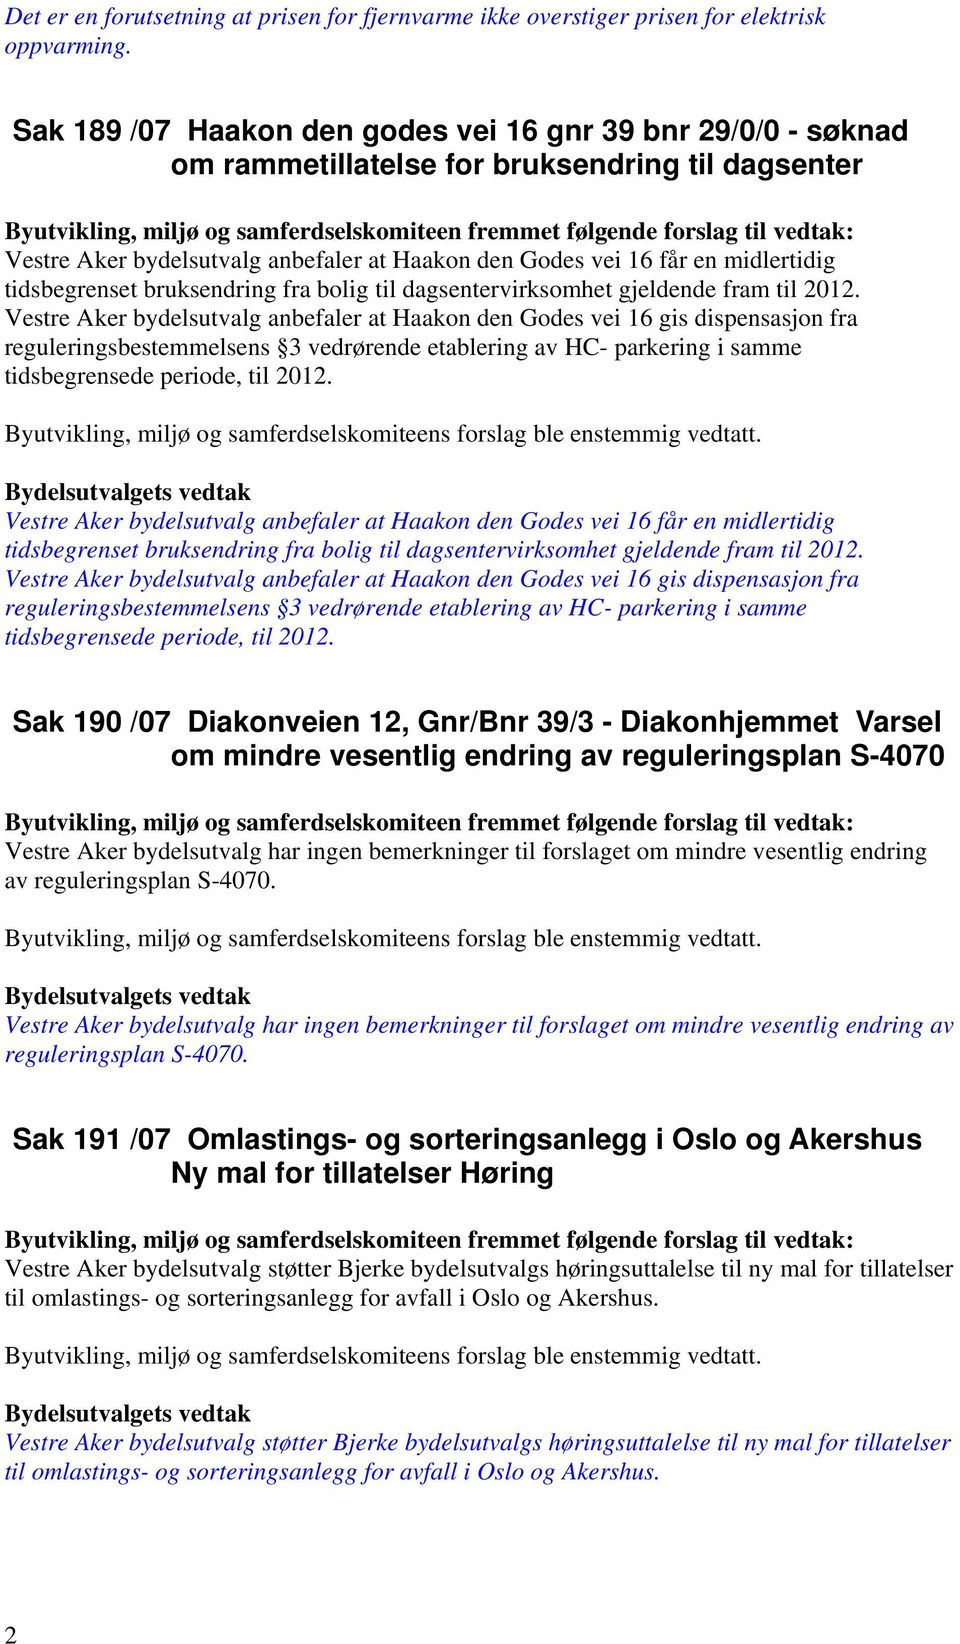 Aker bydelsutvalg anbefaler at Haakon den Godes vei 16 får en midlertidig tidsbegrenset bruksendring fra bolig til dagsentervirksomhet gjeldende fram til 2012.